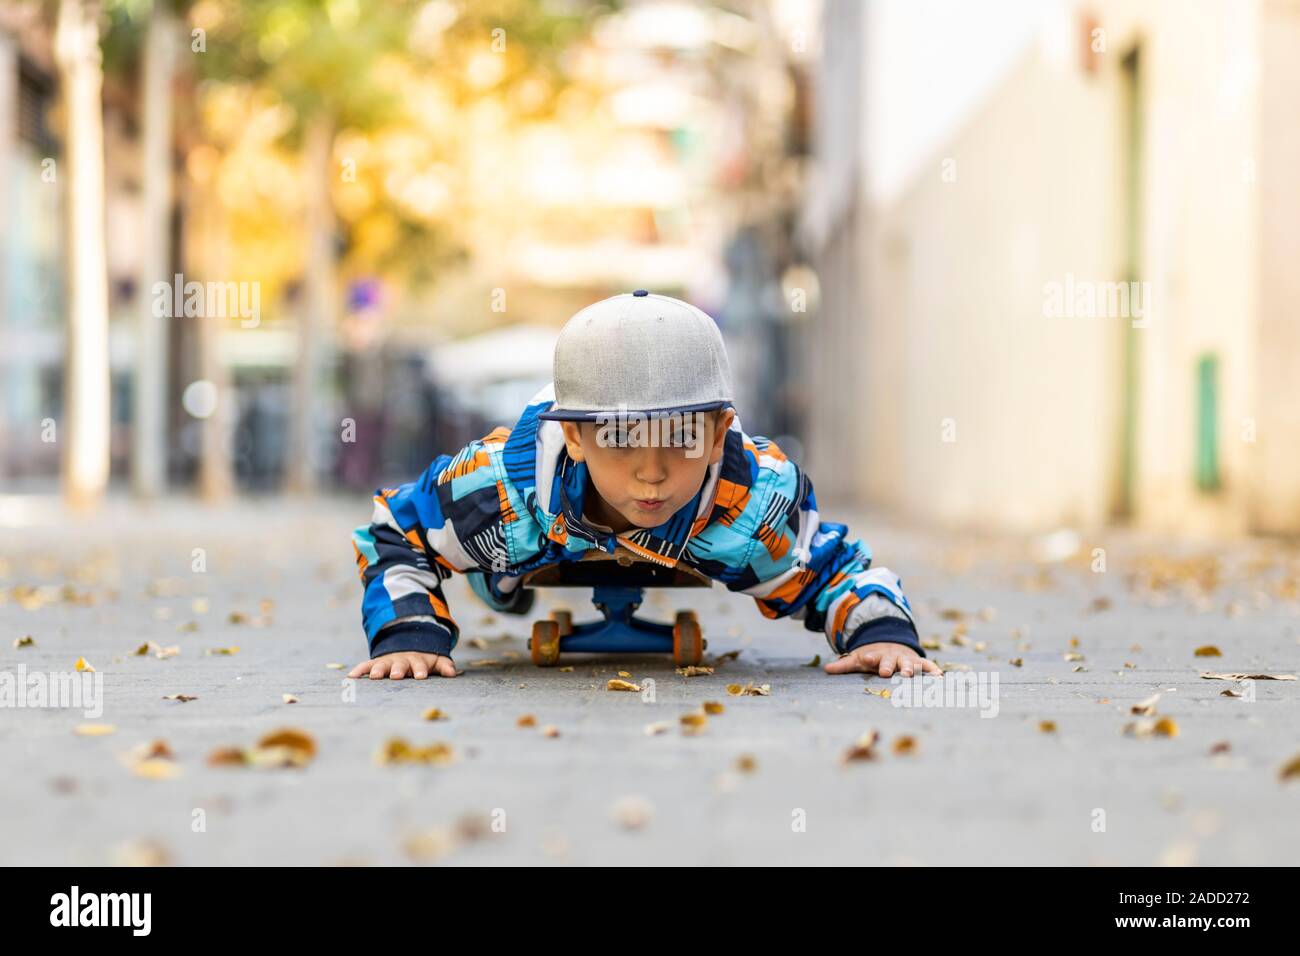 Süßes kleines Kind streckte sich auf einem Skateboard Stockfoto